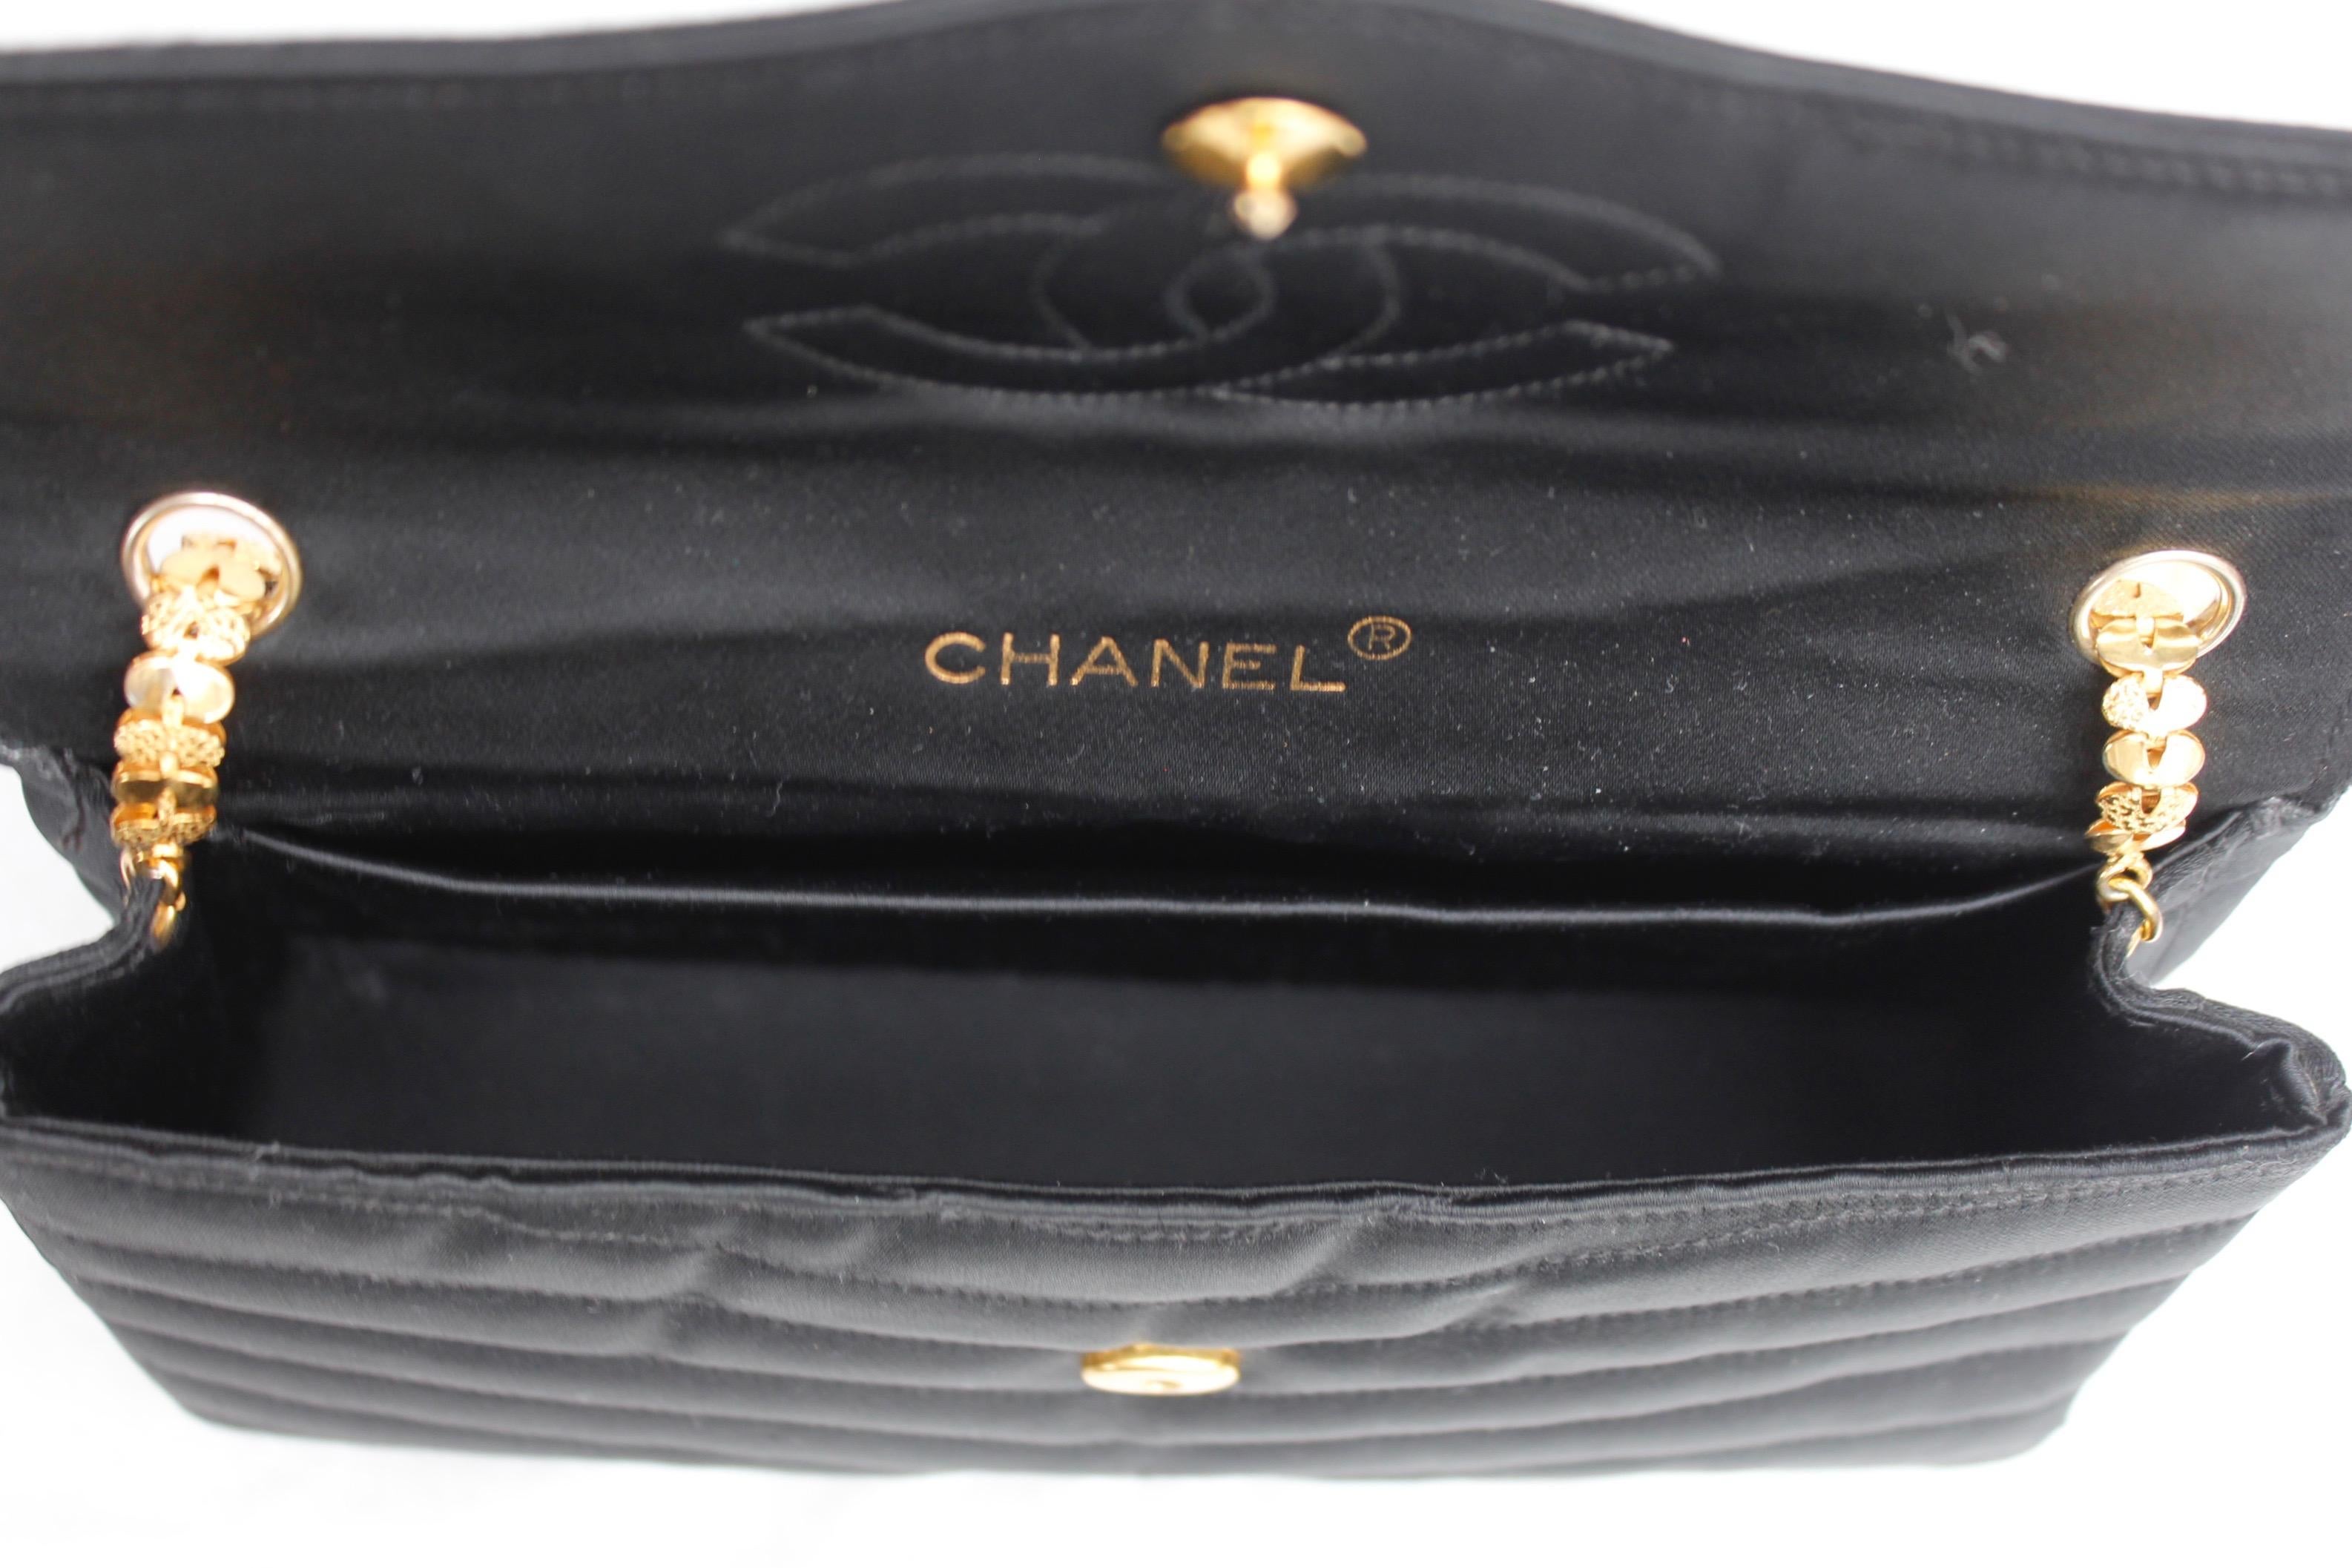 Chanel elegant evening jewel bag in black satin For Sale 1